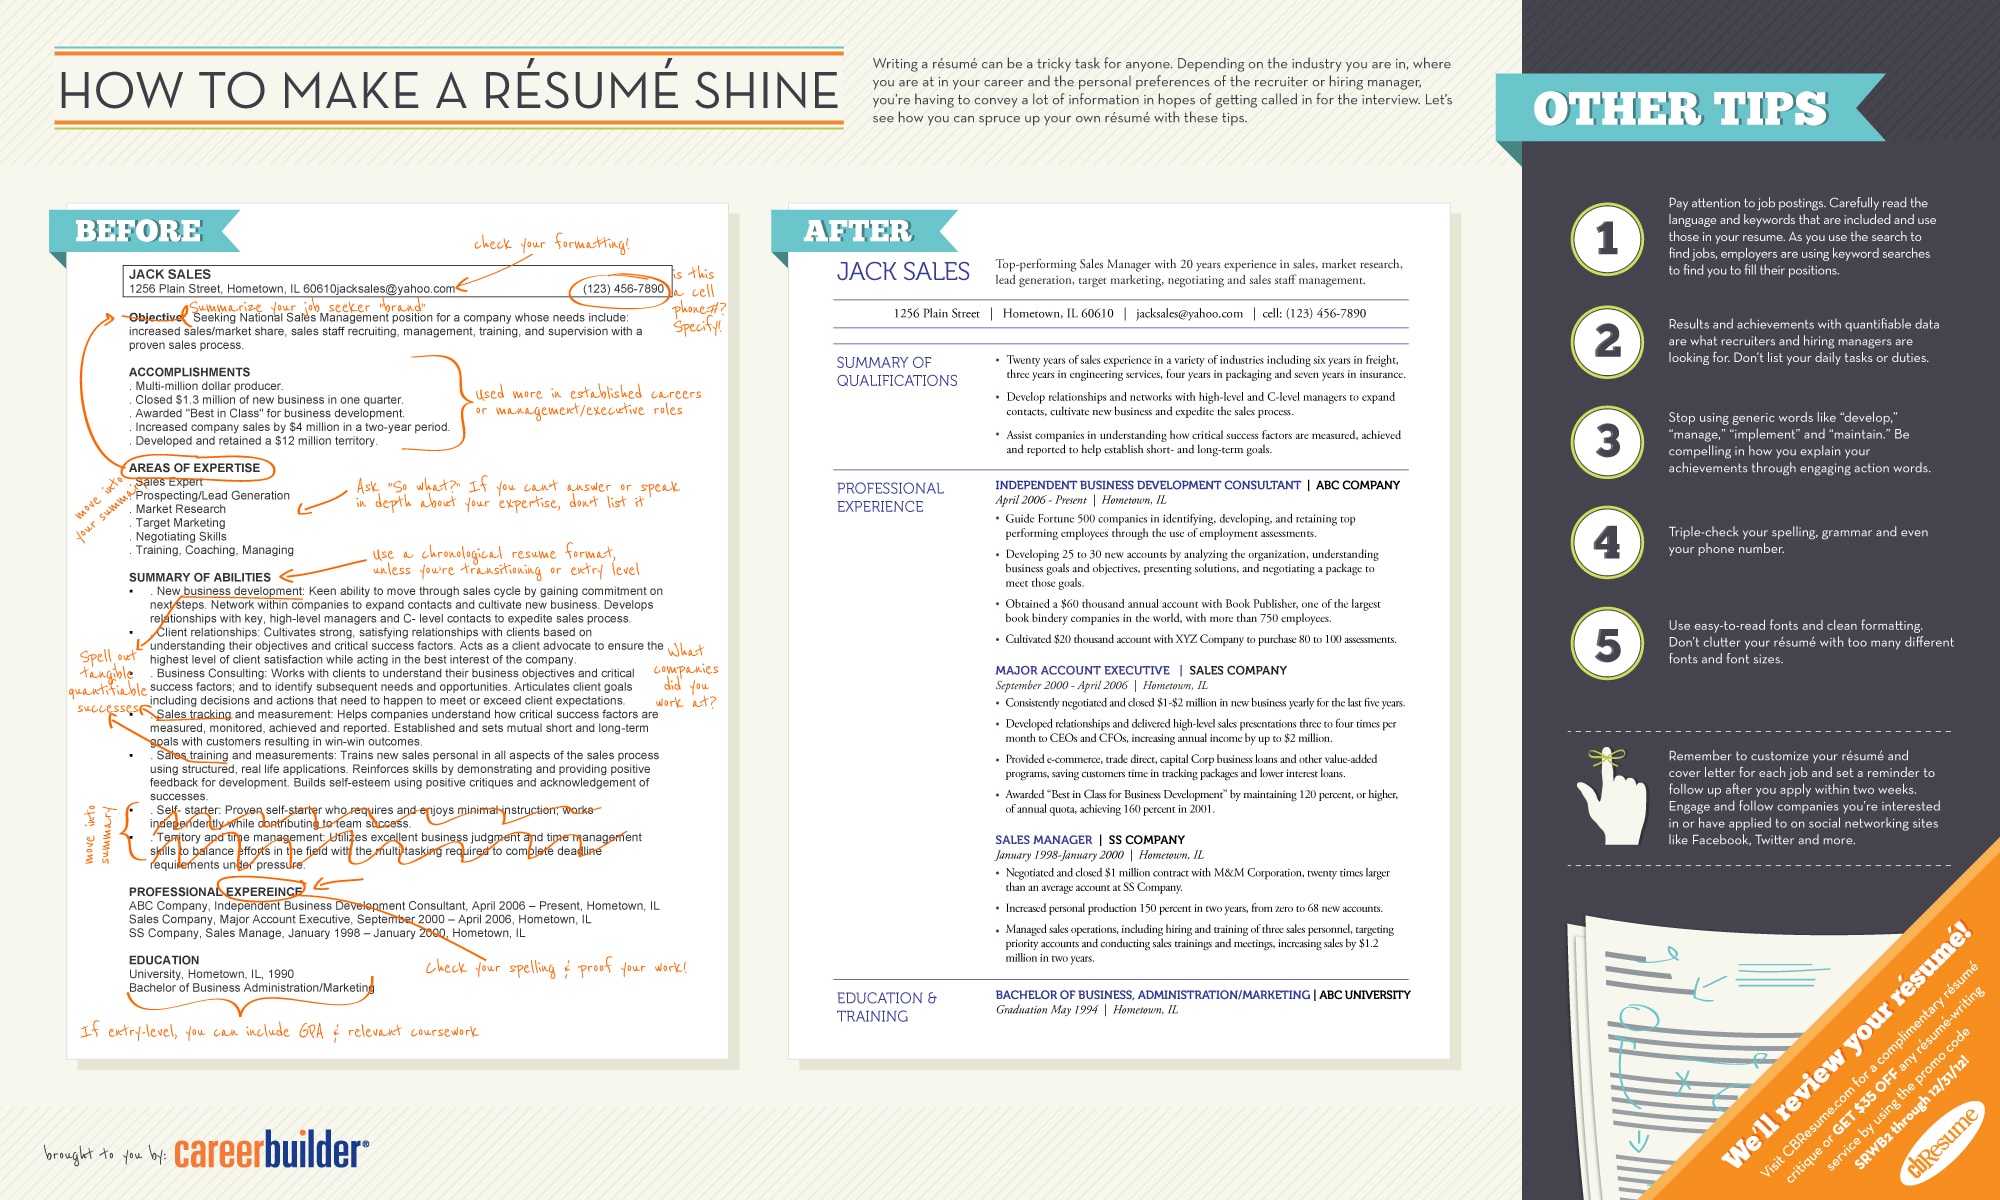 resume-tips-for-better-reading